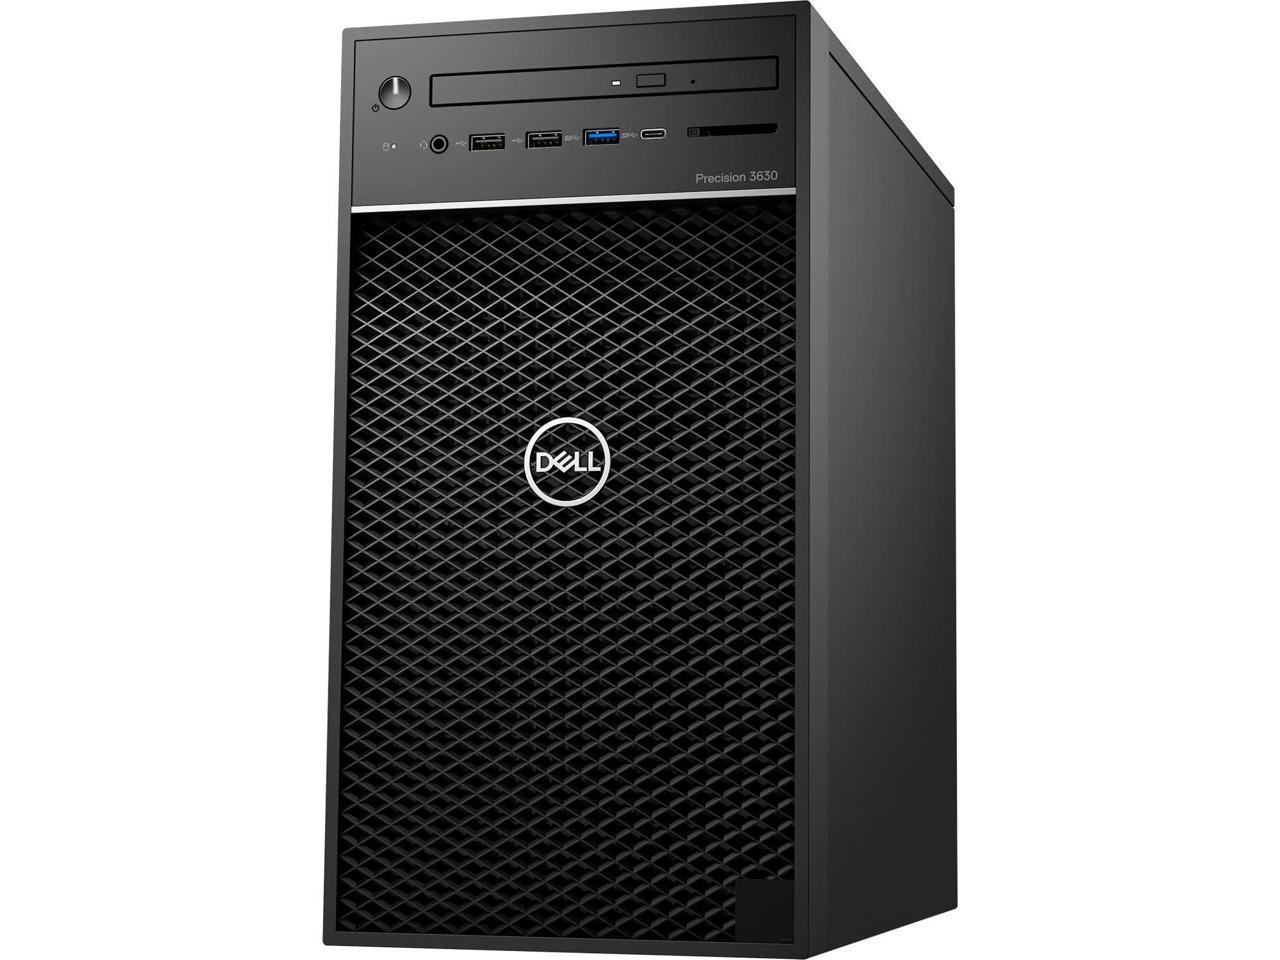 Dell Precision 3630 Desktop, Intel Xeon E-2124G Upto 4.5GHz, 16GB